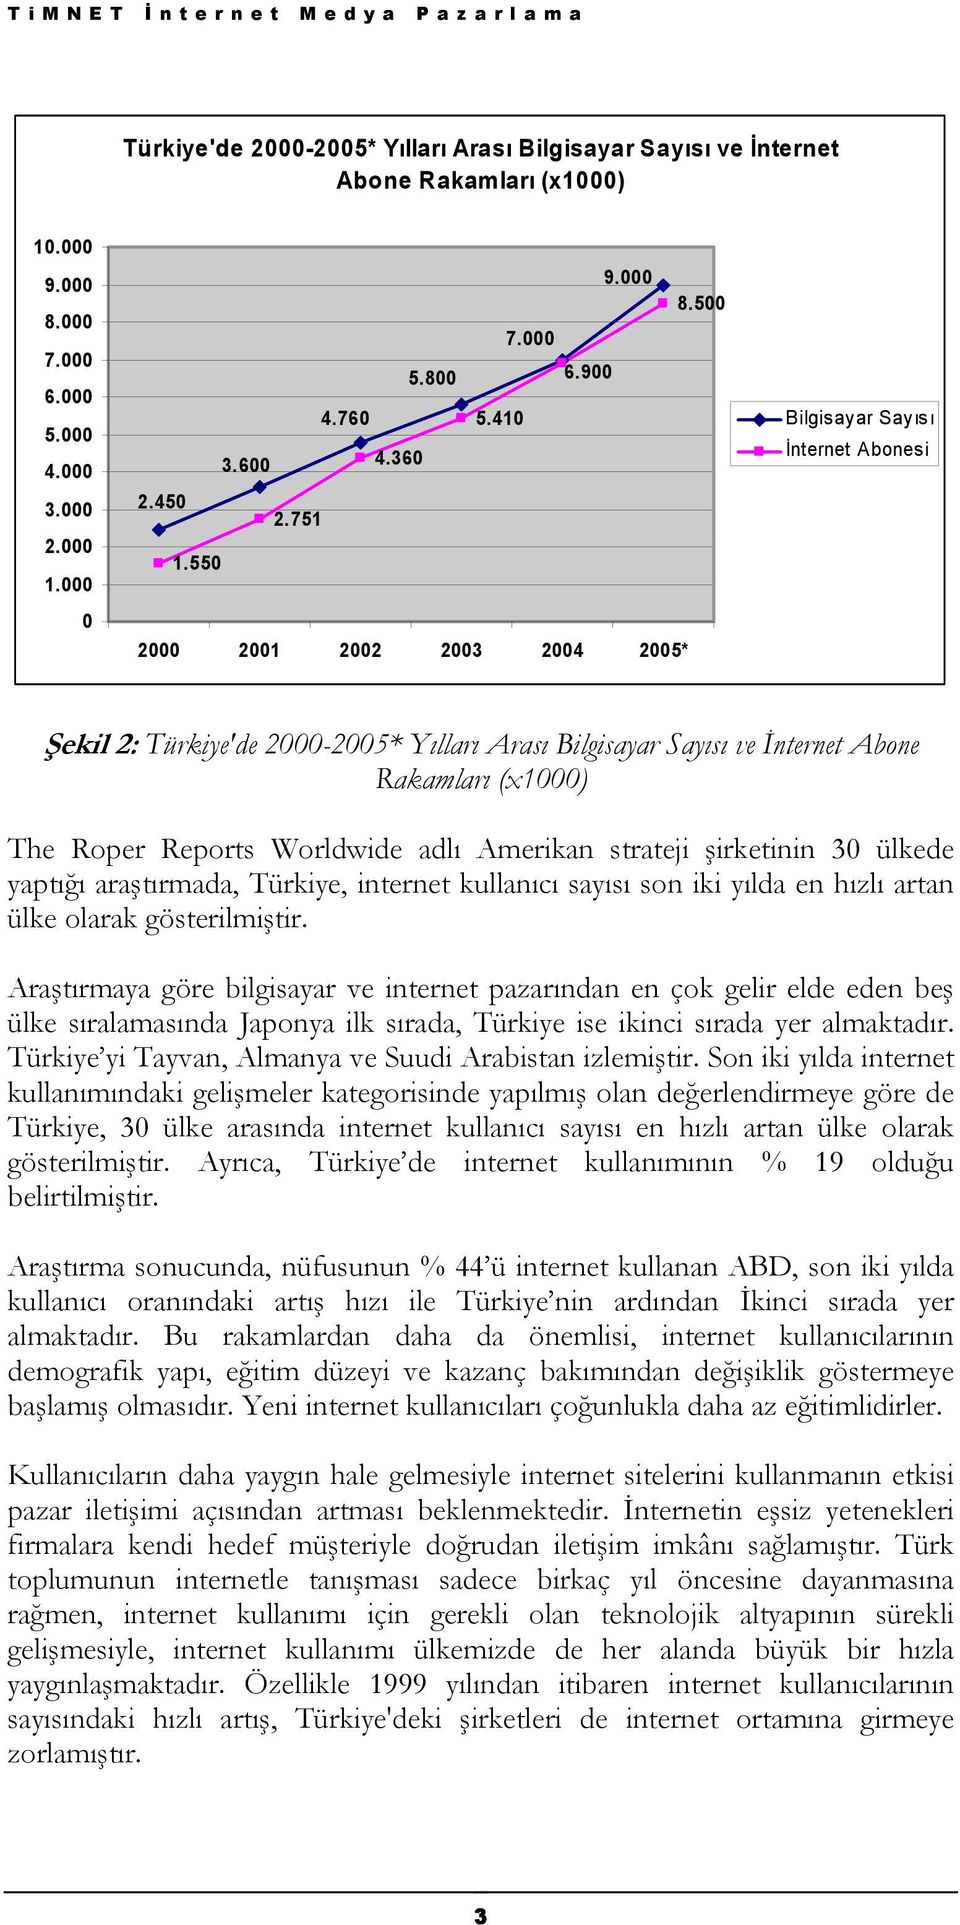 550 2000 2001 2002 2003 2004 2005* Bilgisayar Sayısı İnternet Abonesi Şekil 2: Türkiye'de 2000-2005* Yılları Arası Bilgisayar Sayısı ve İnternet Abone Rakamları (x1000) The Roper Reports Worldwide